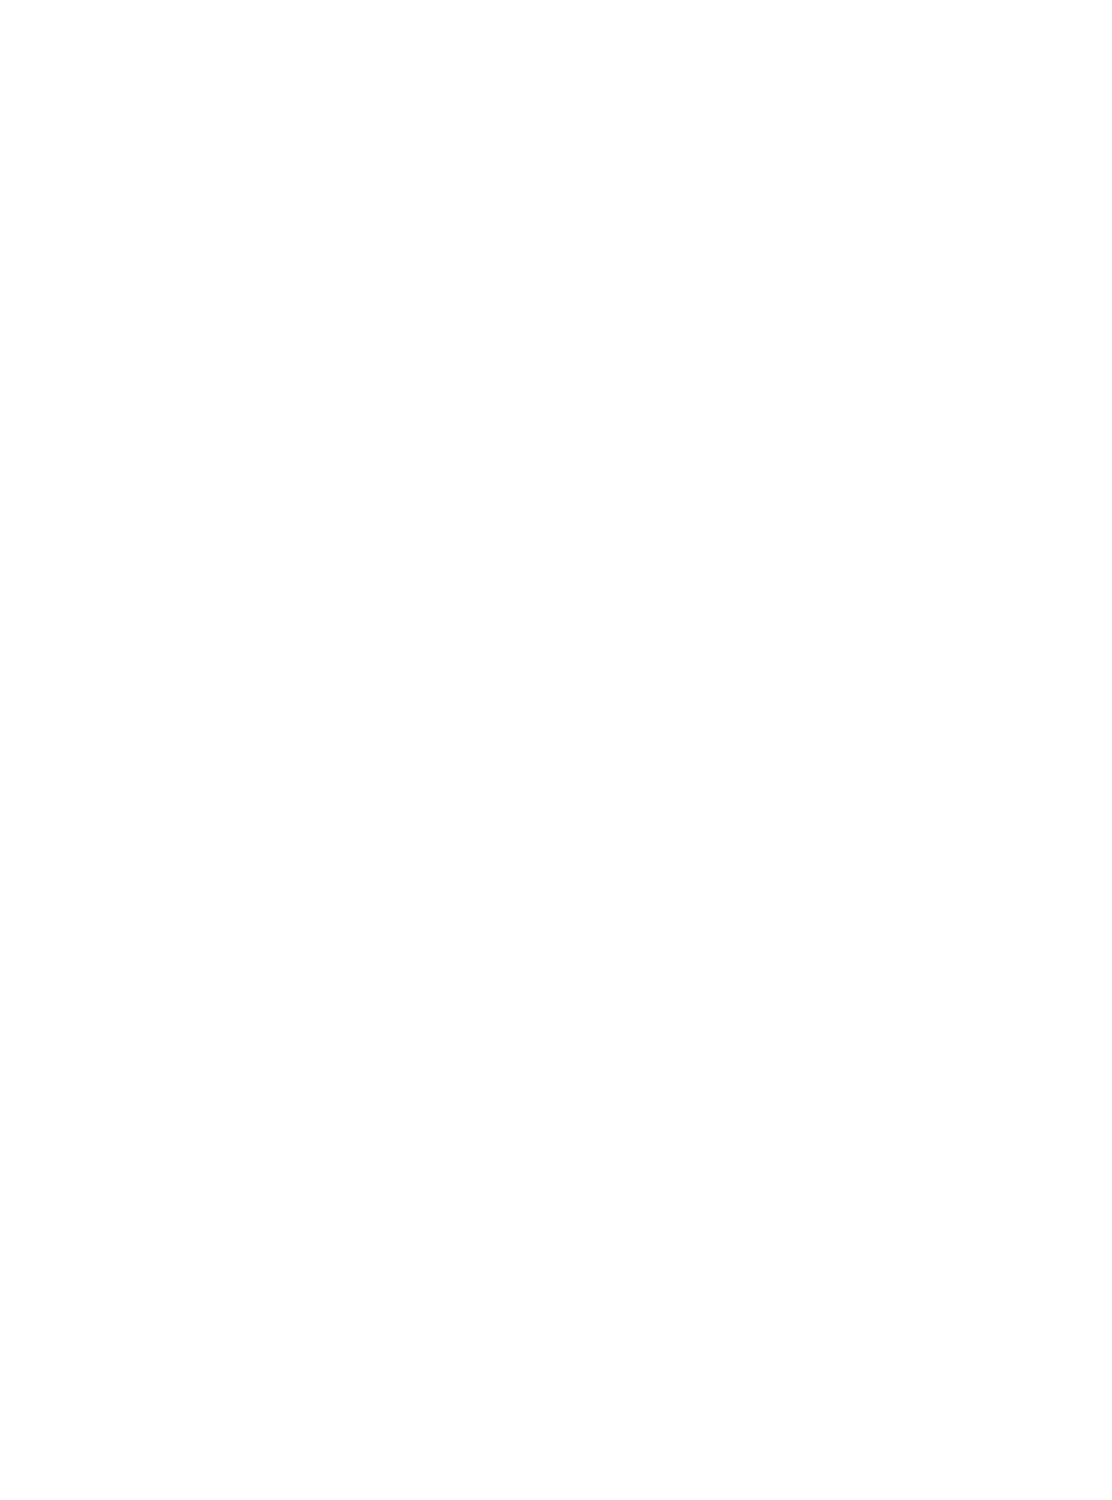 Mount Zion Prayer Center